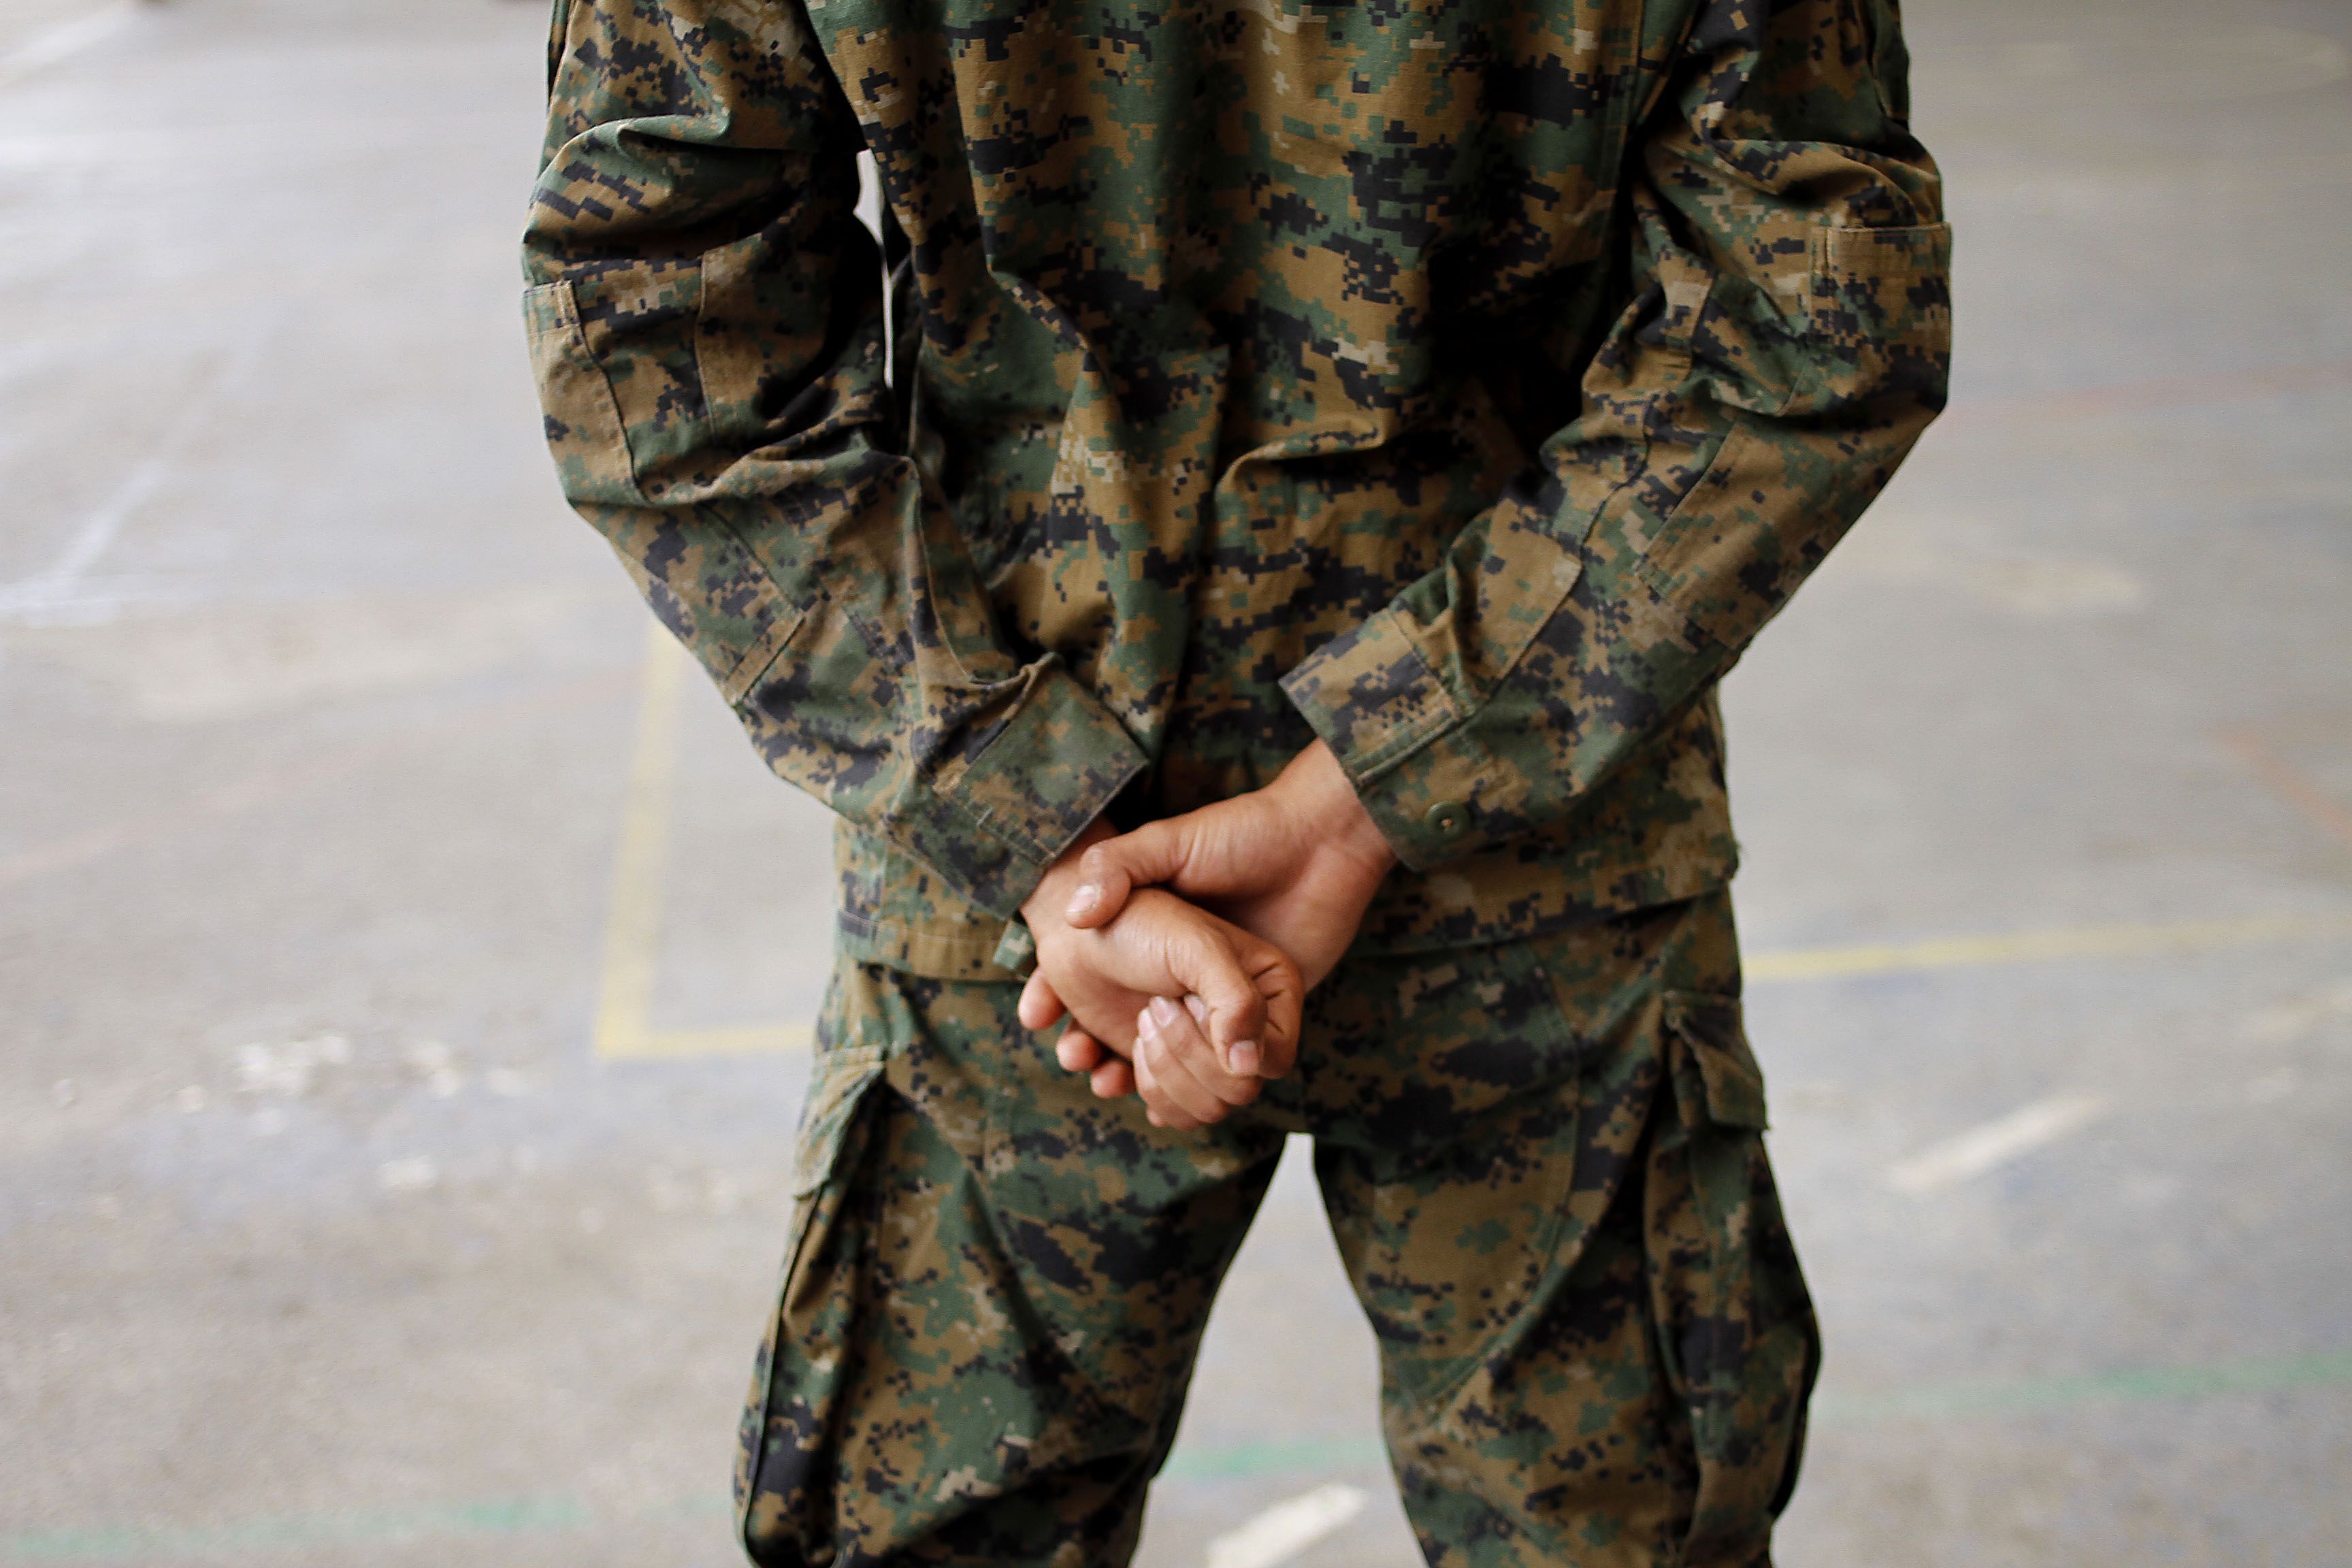 ¿Un déjà vu de Antuco?: la extraña muerte de un conscripto en Putre que vuelve a instalar dudas sobre las condiciones del Servicio Militar
FOTO: HANS SCOTT /AGENCIAUNO